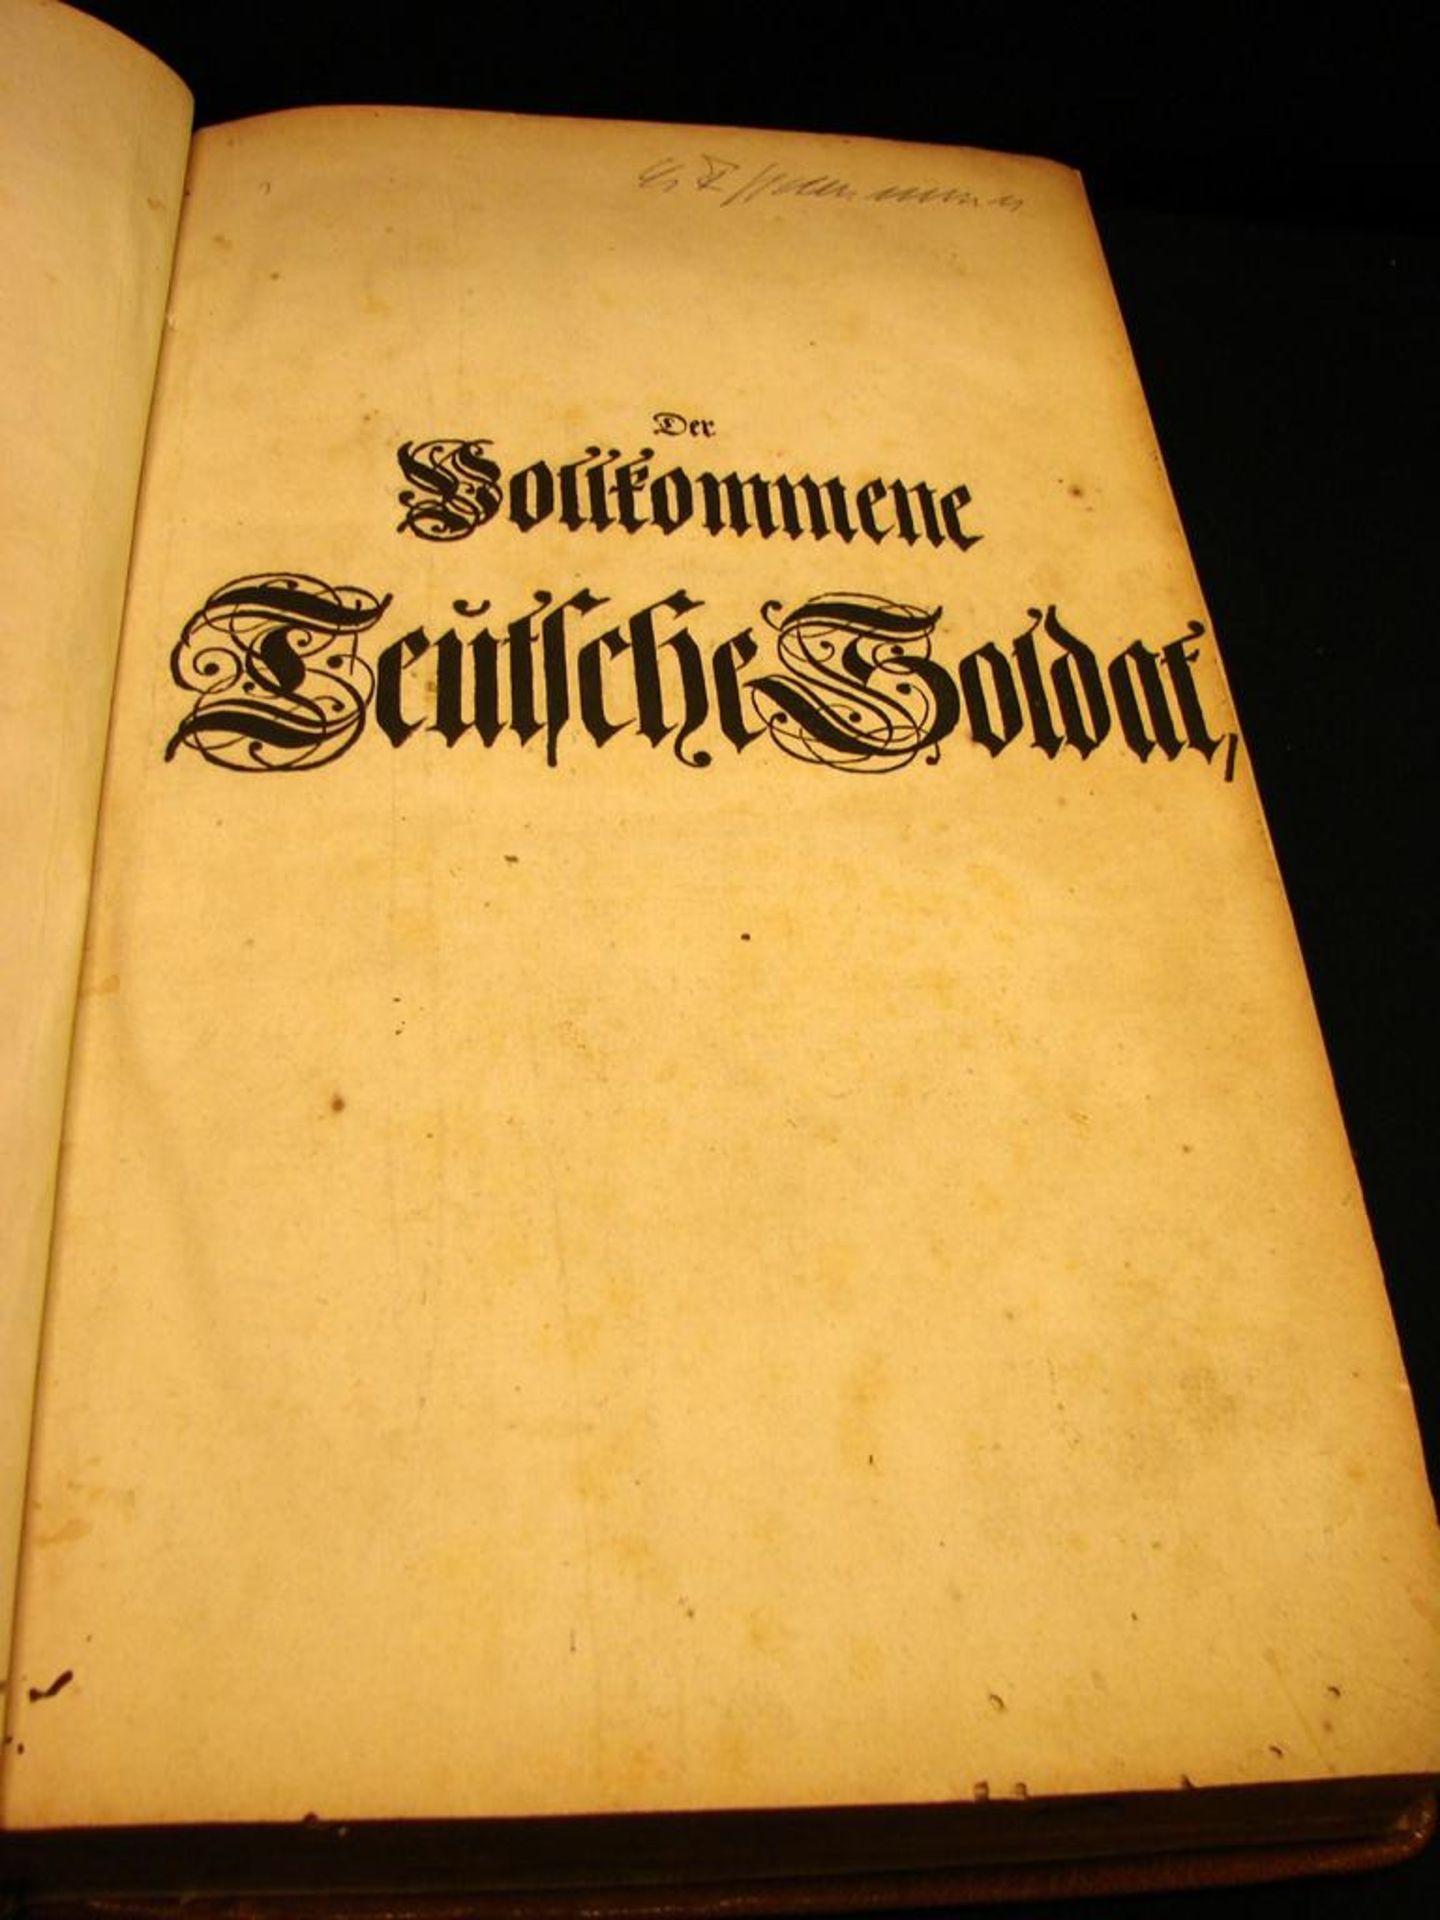 Buch, "Der vollkommene Teutsche Soldat", Kupferstiche, 1. Band, 1726, Leipzig- - -22.00 % buyer's - Bild 2 aus 3